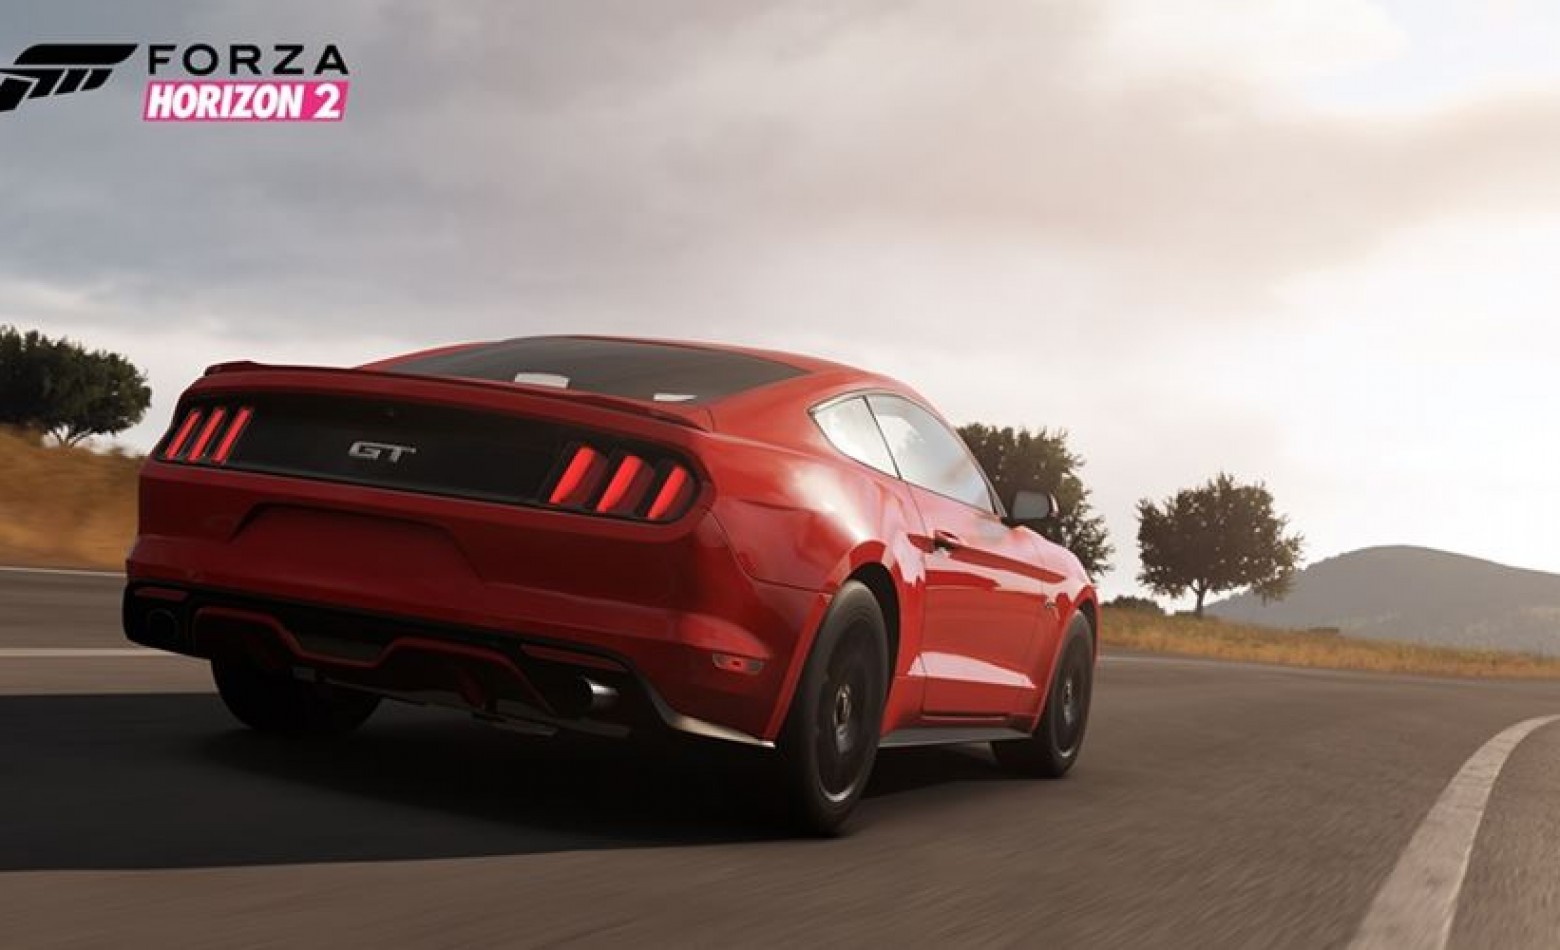 Compre Forza Horizon 2, ganhe oito carros (virtuais)